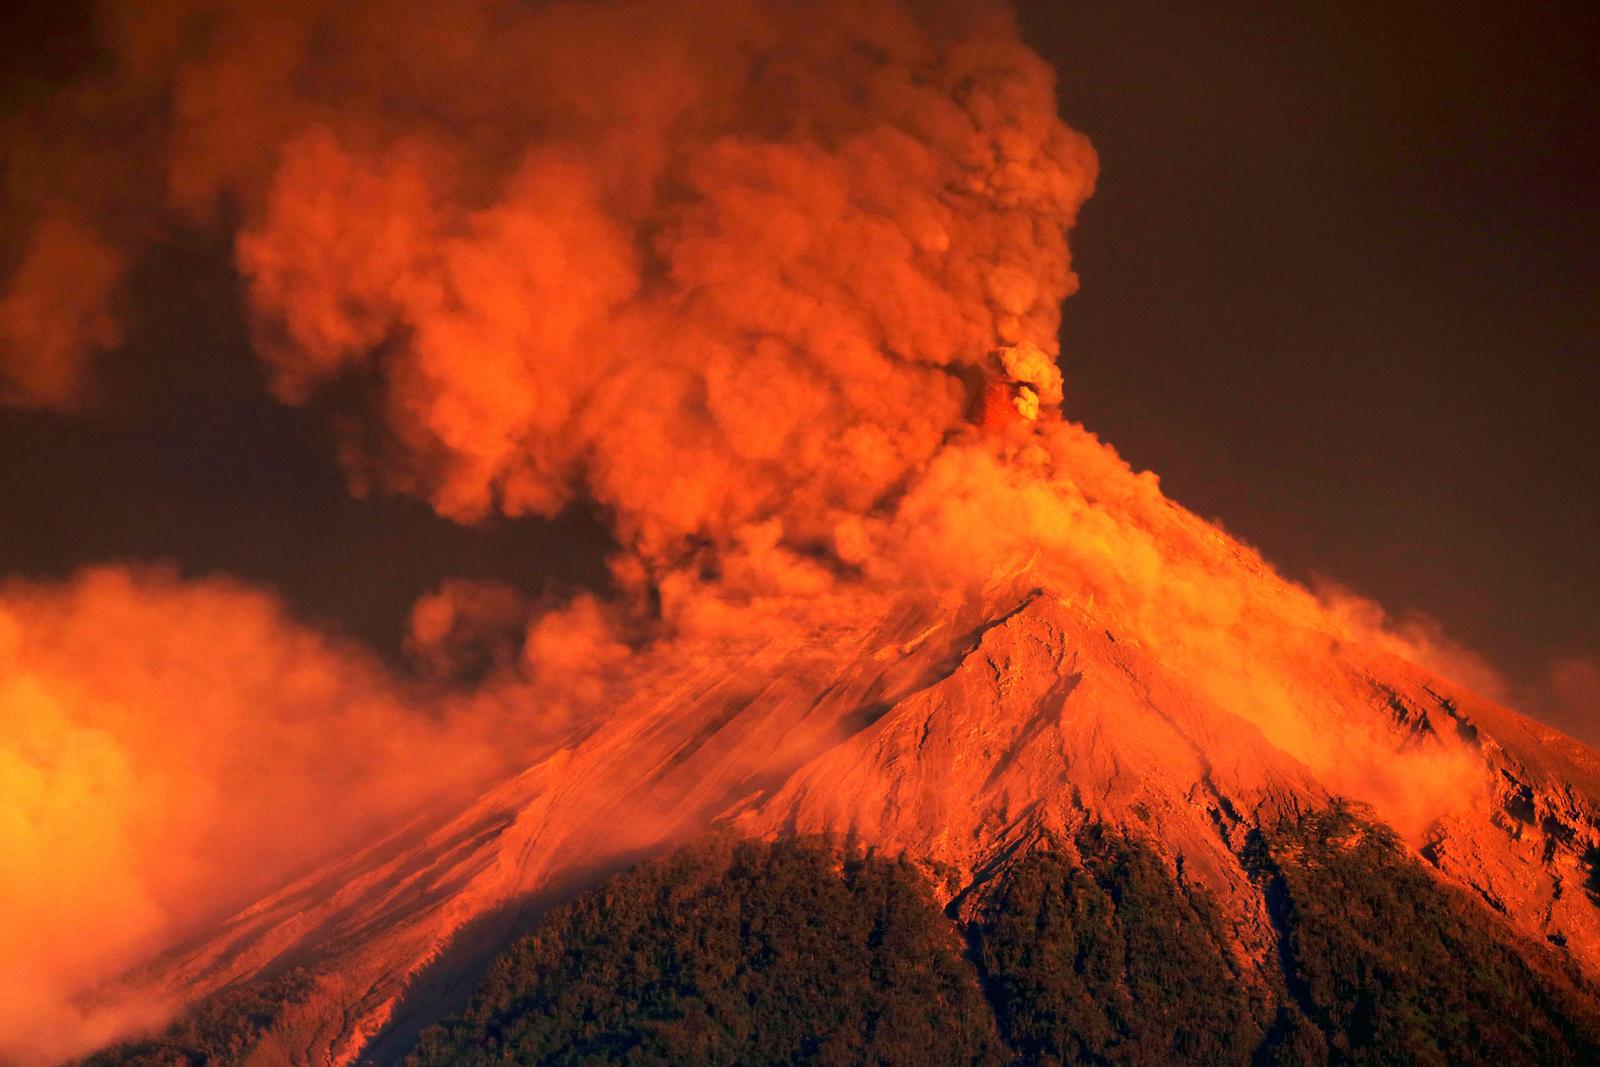 Advierten. Aún se mantiene la alerta ante la posibilidad de nuevos flujos piroclásticos del volcán. (EFE)